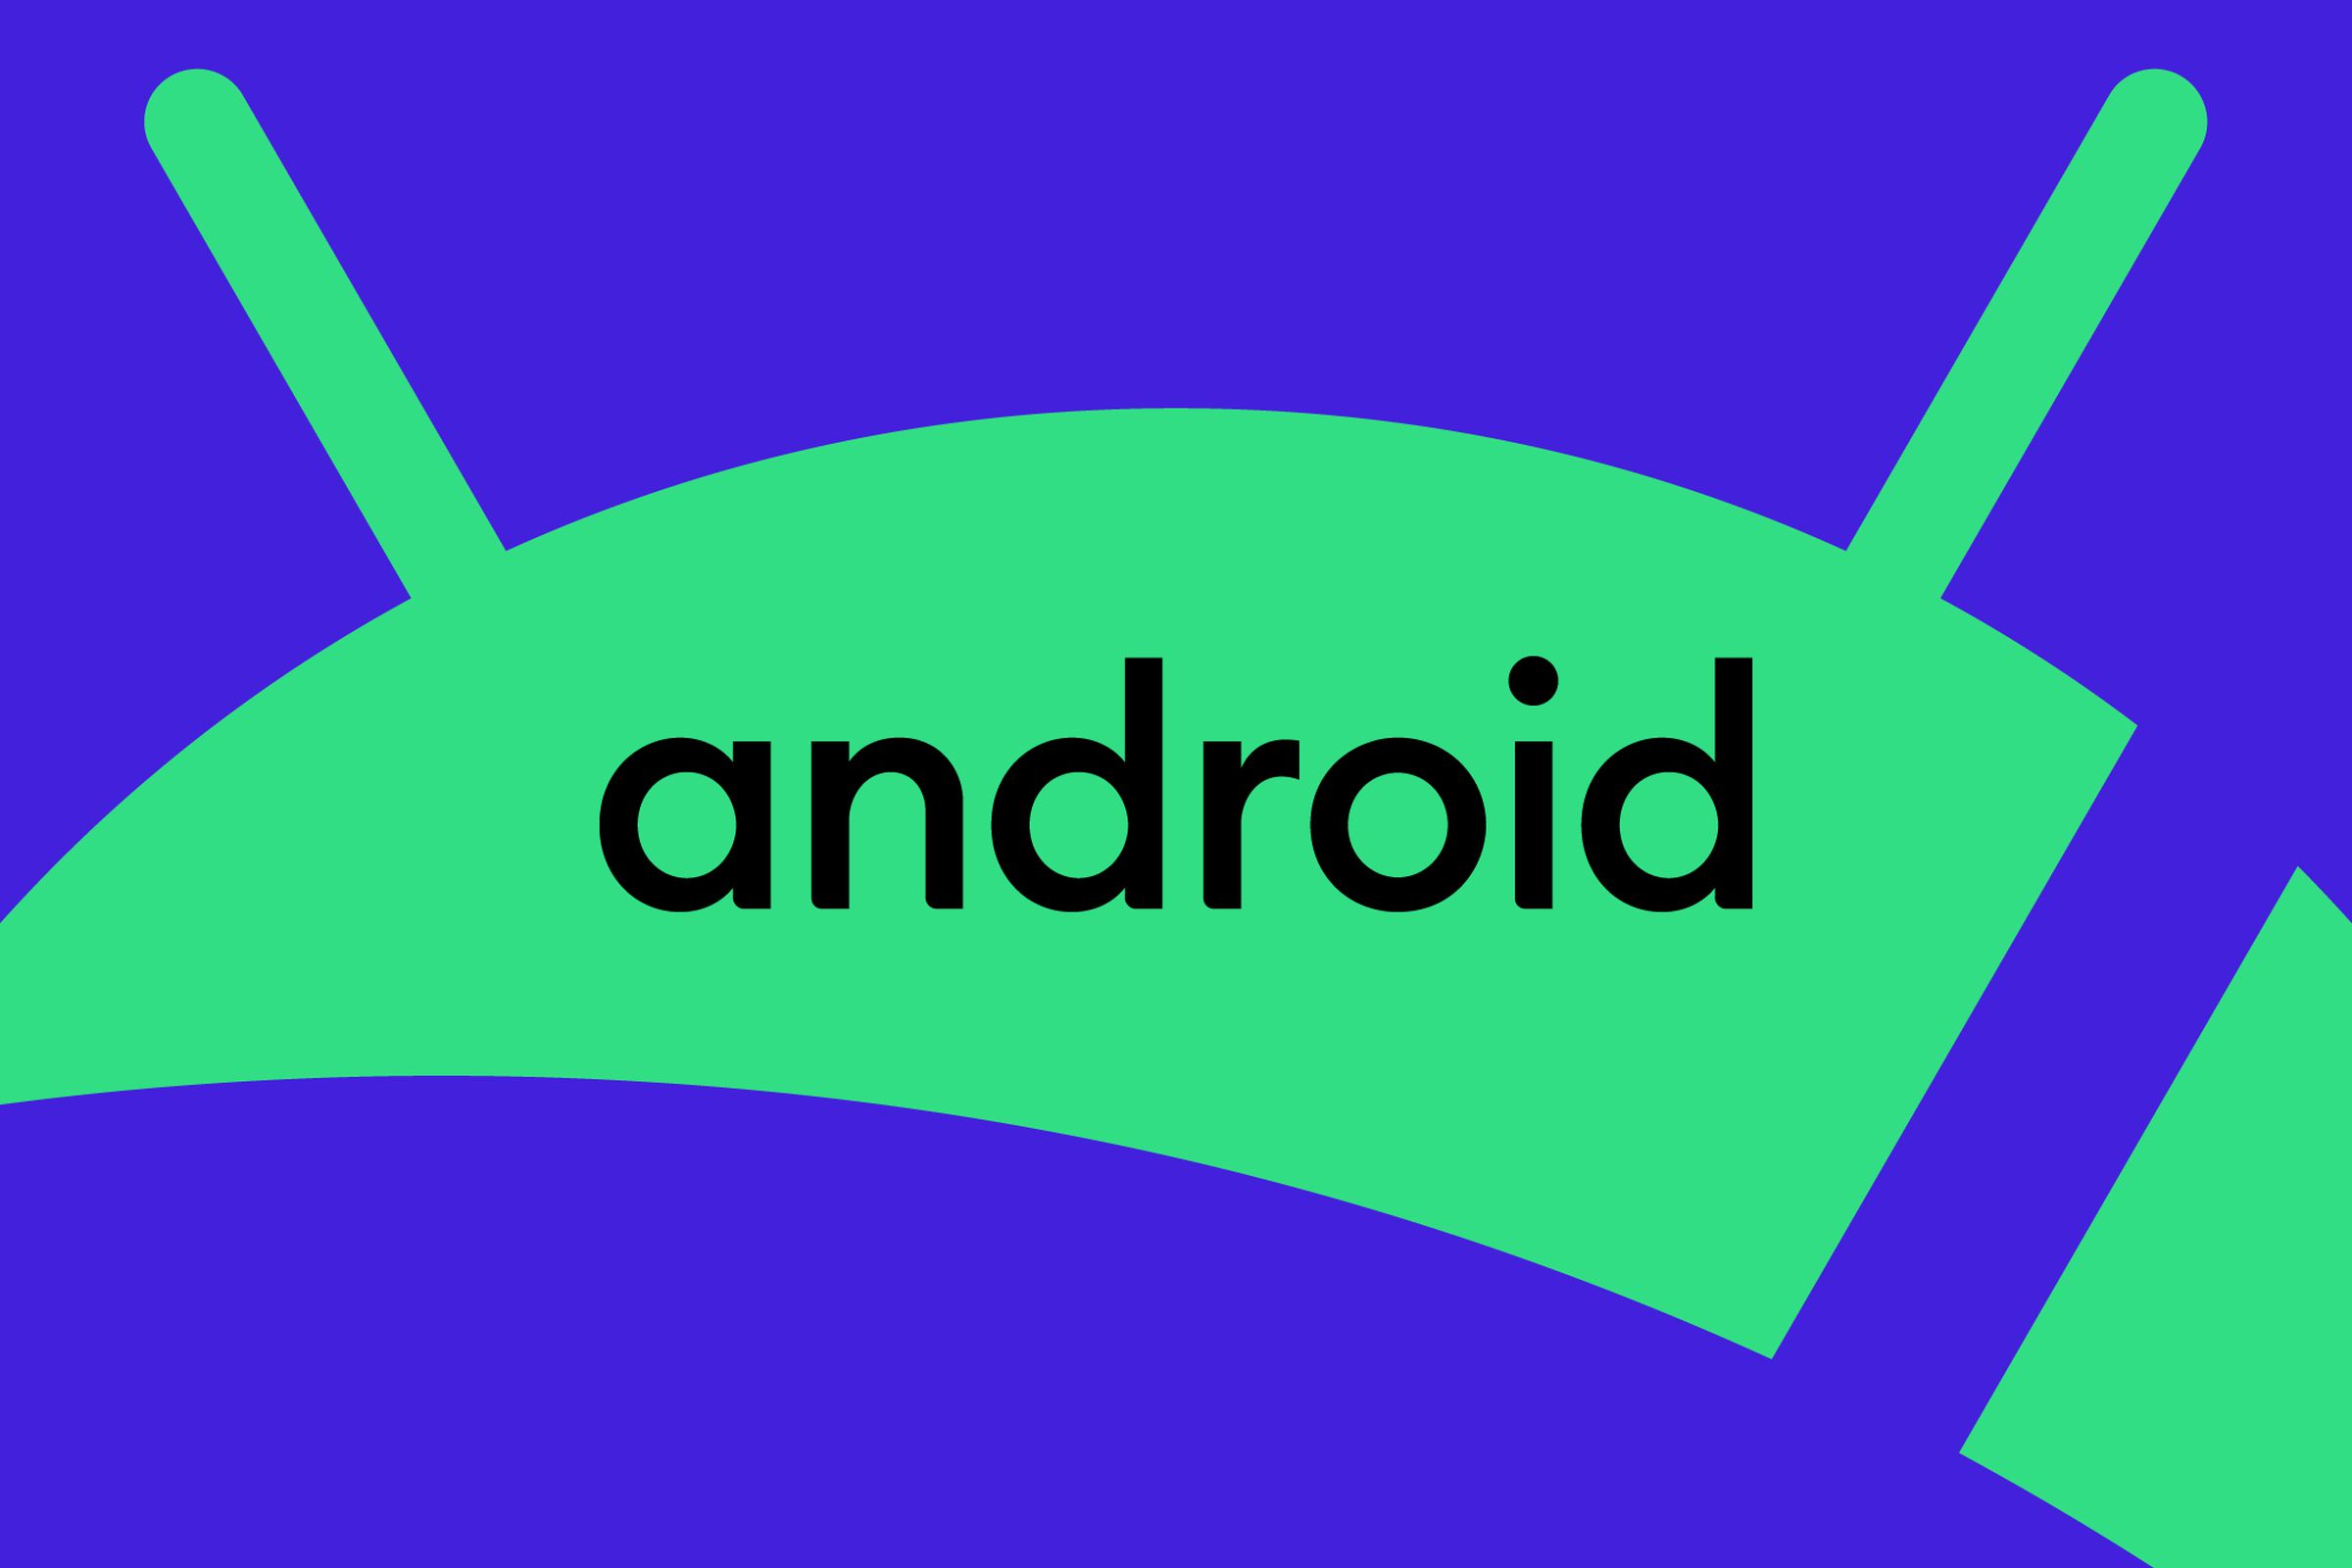 Logo Android dengan latar belakang biru dan hijau.